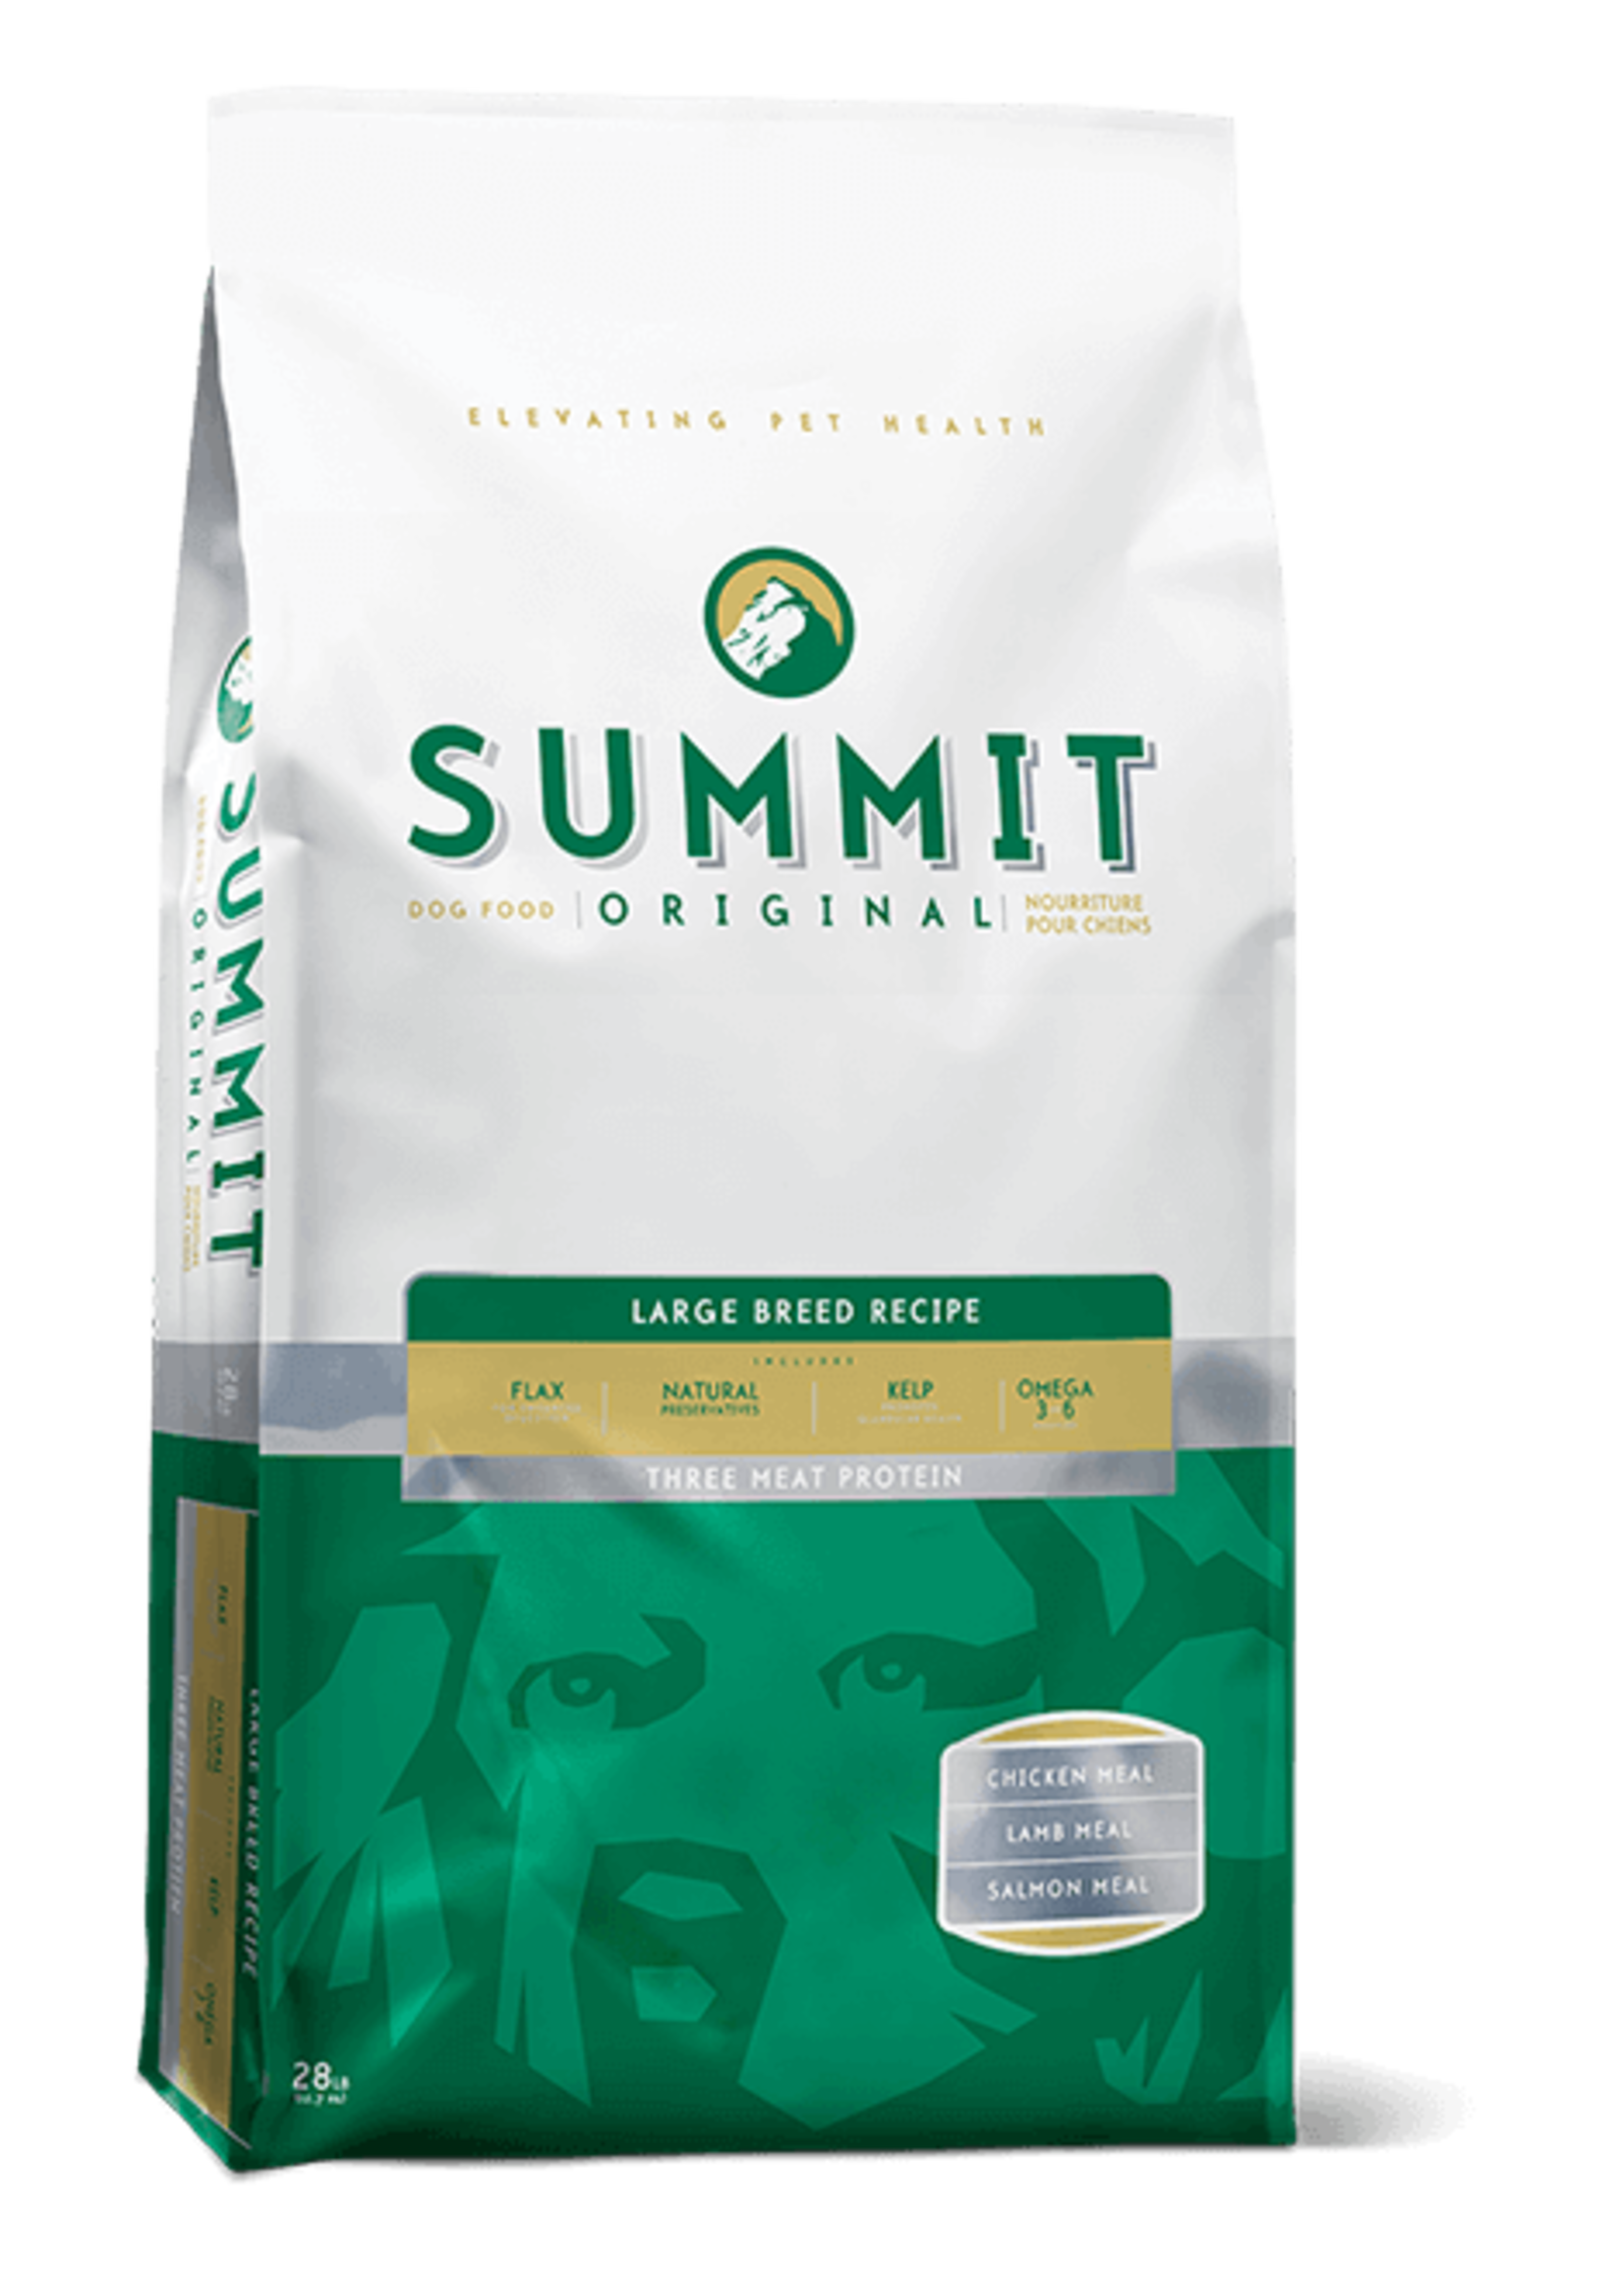 Summit Summit - Original 3 Meat Large Breed